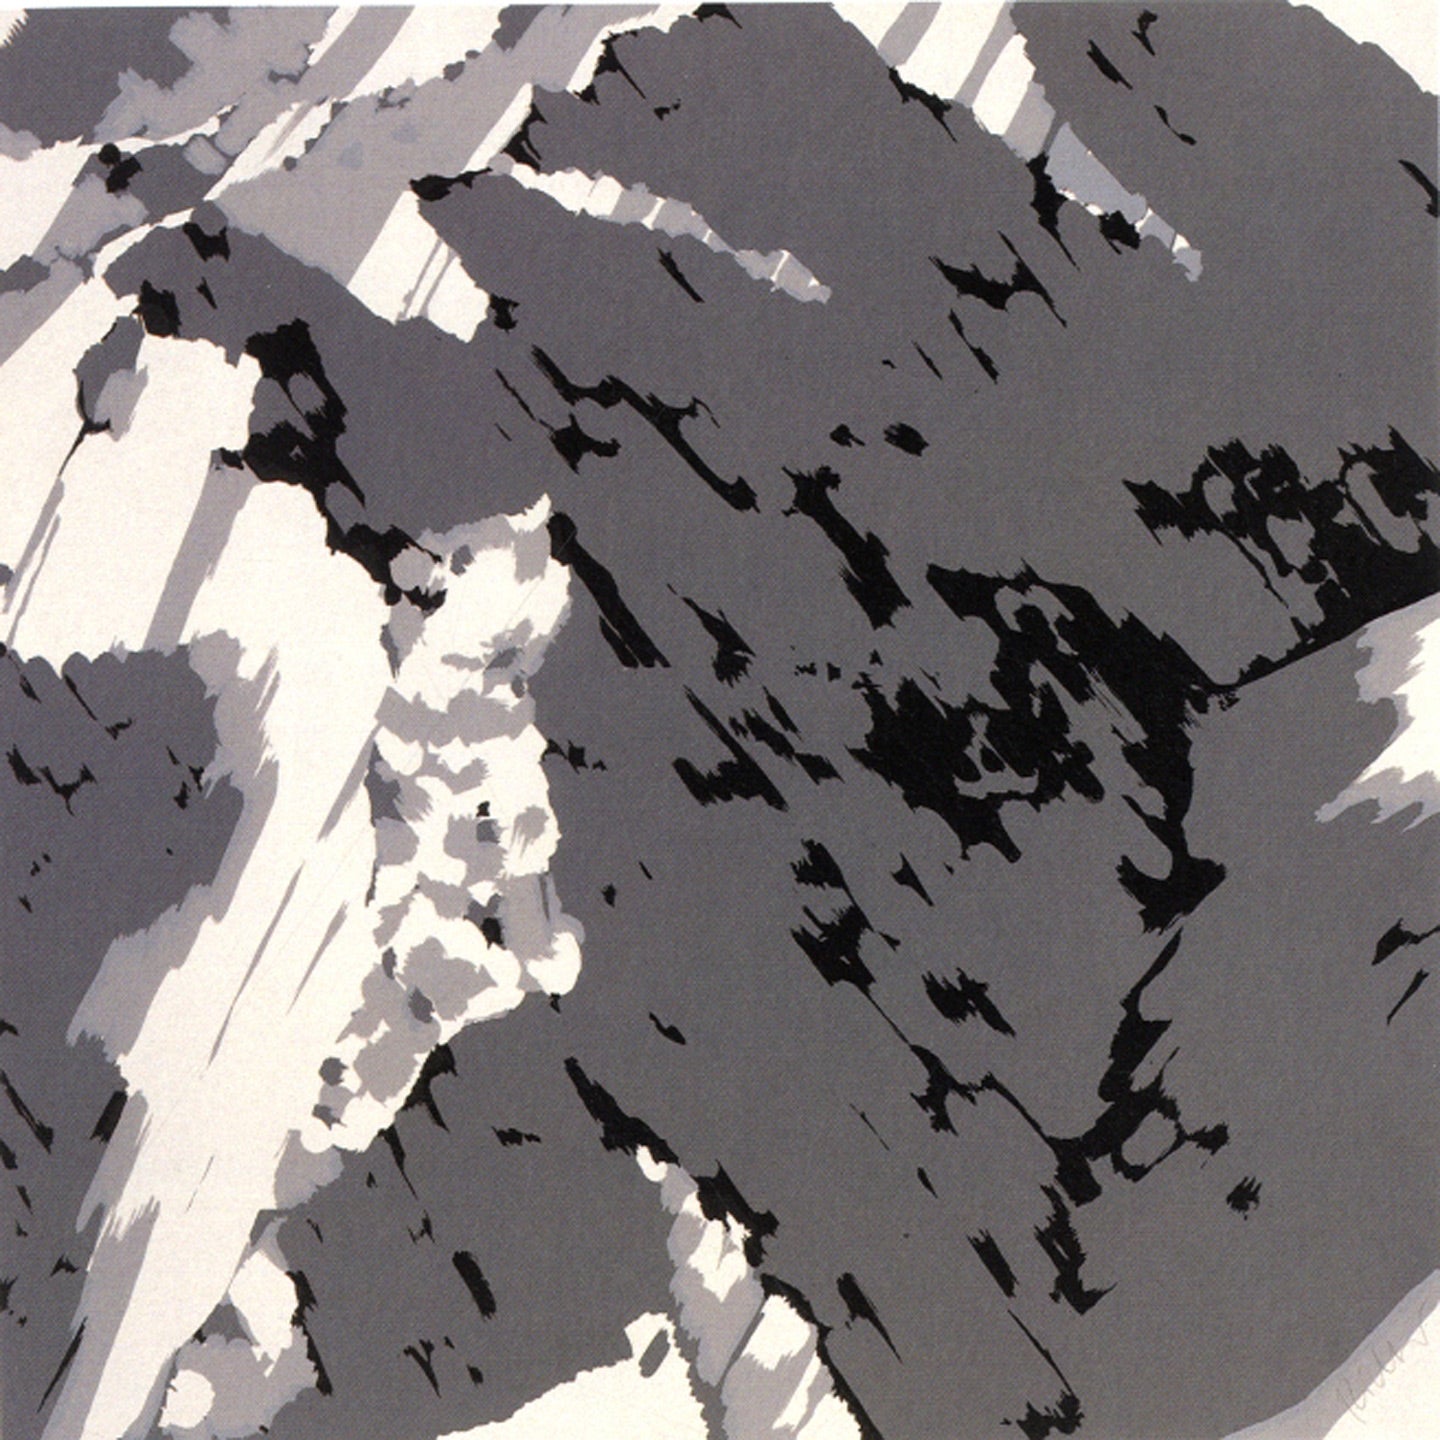 Gerhard Richter: Editions 1965-2004, Catalogue Raisonné